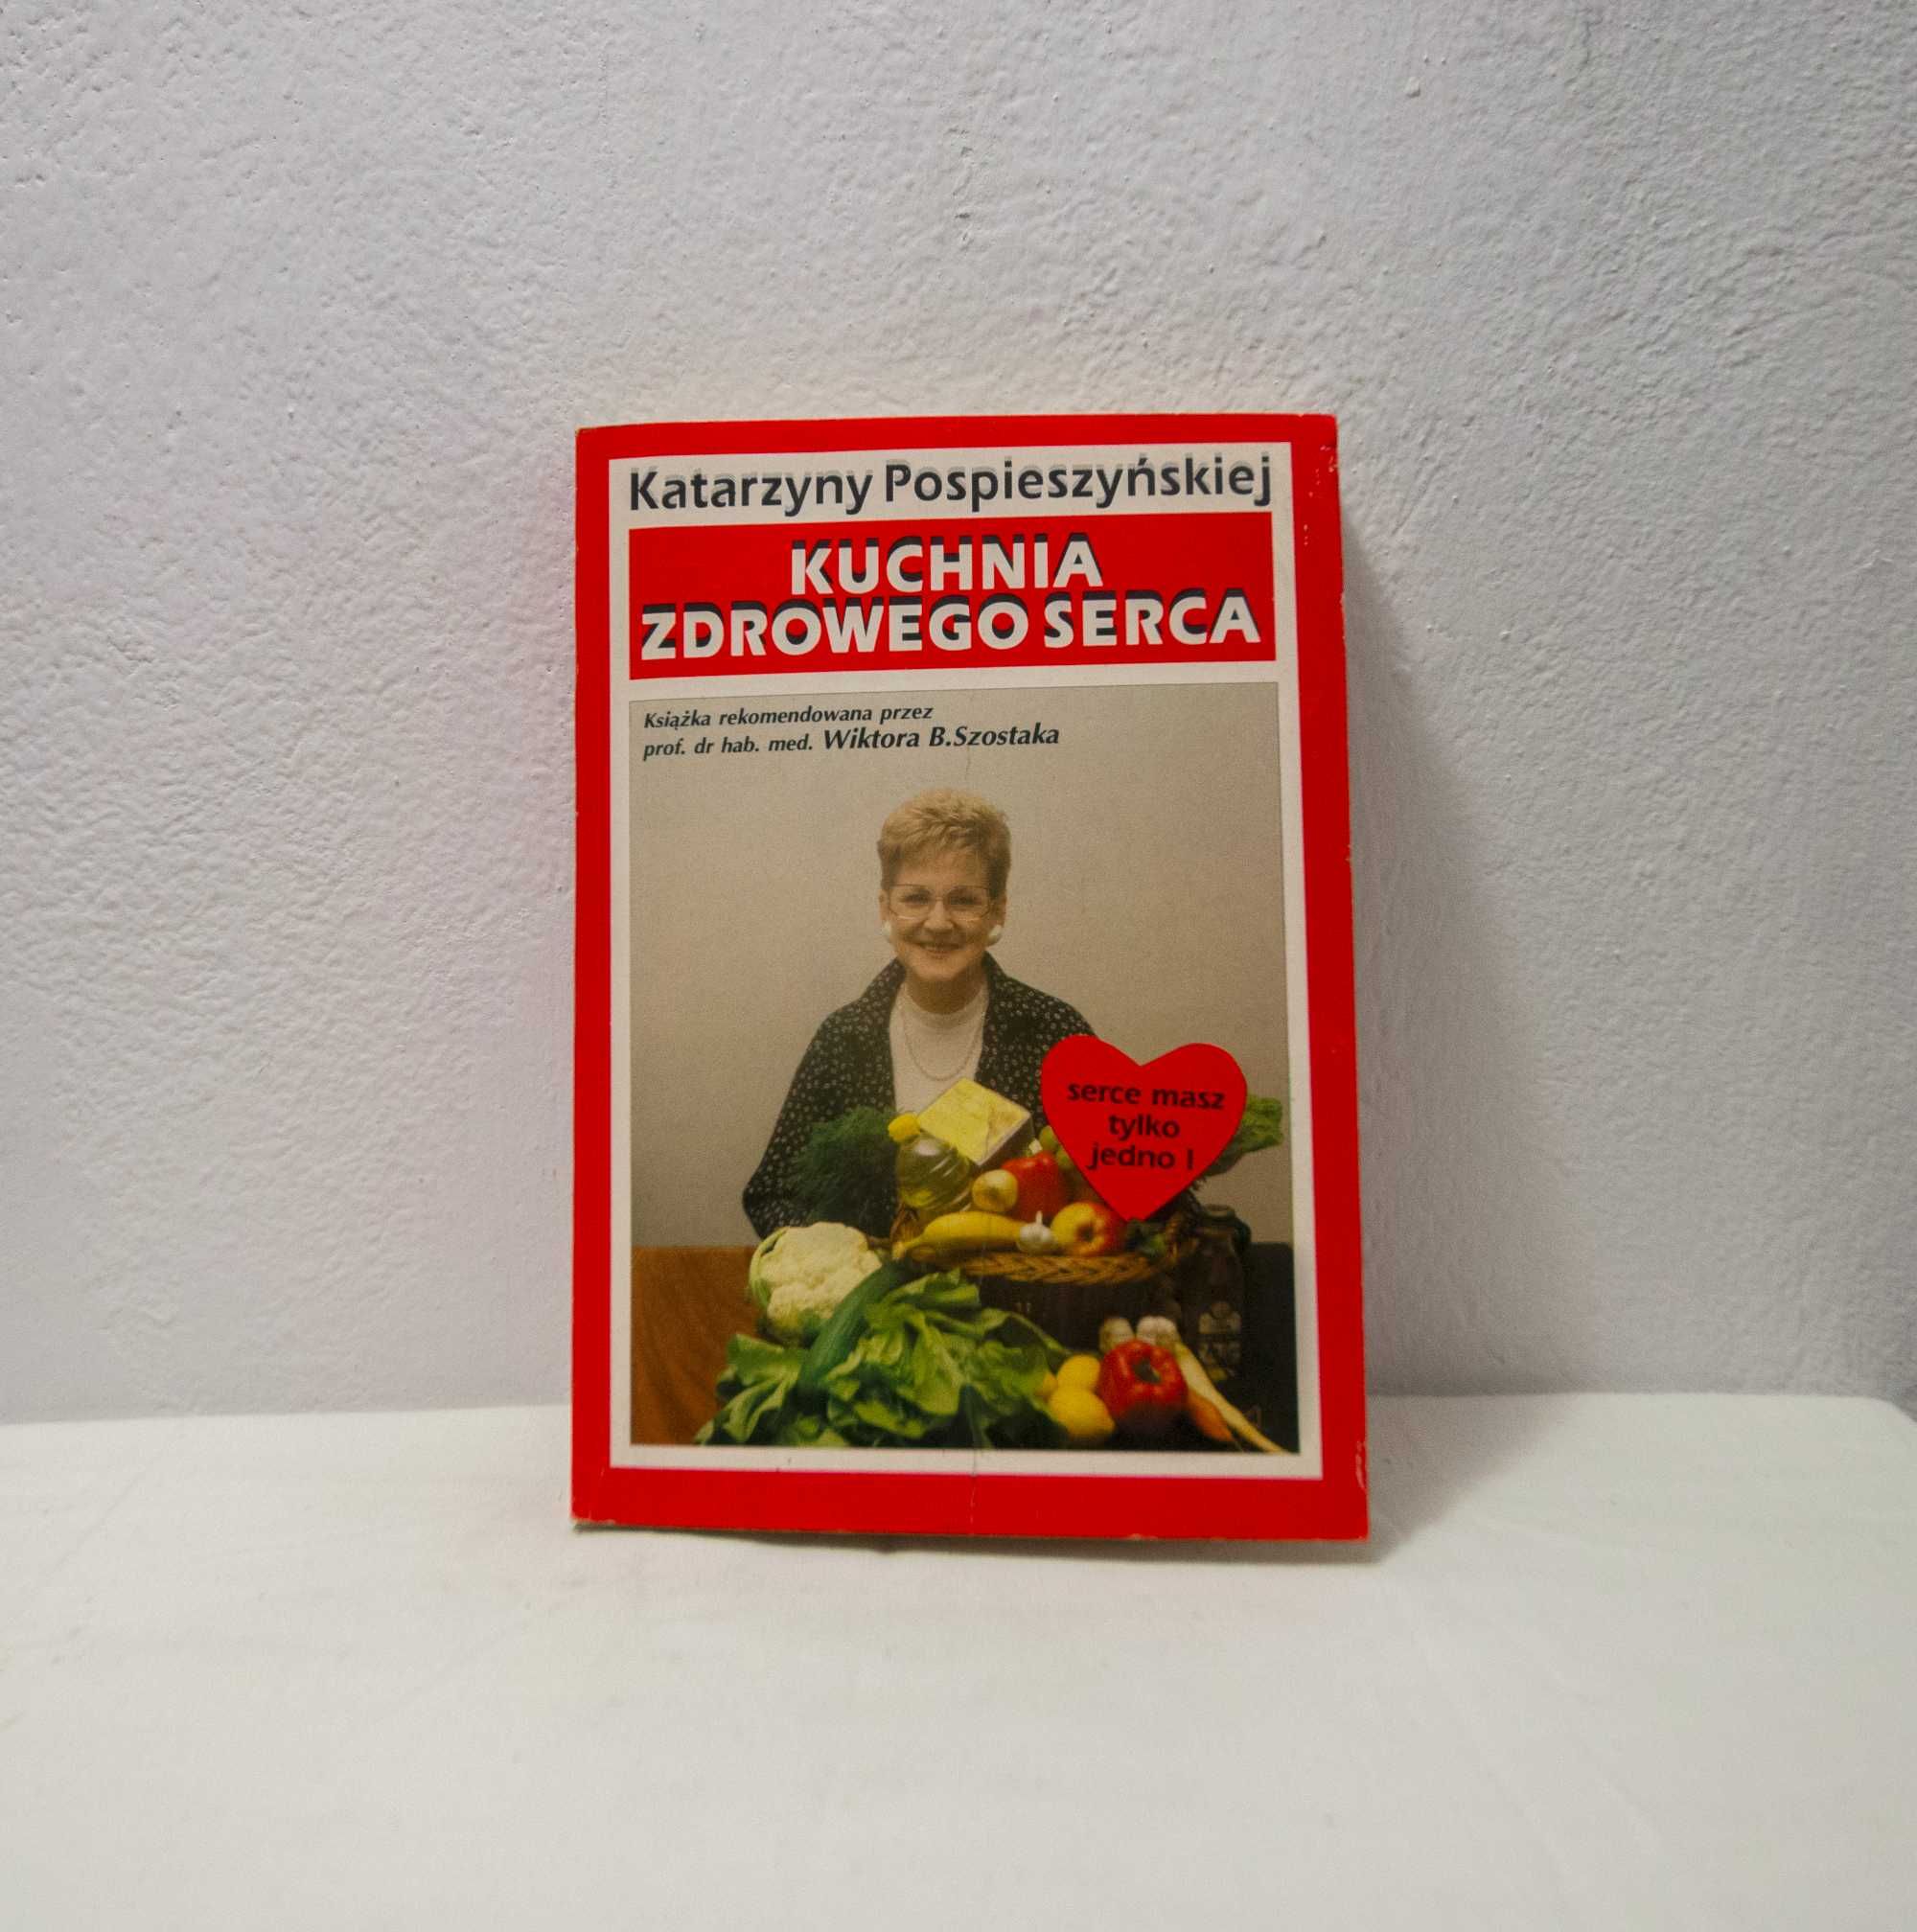 Książki "Kuchnia zdrowego serca", "Przygoda kulinarna" Pospieszyńskiej